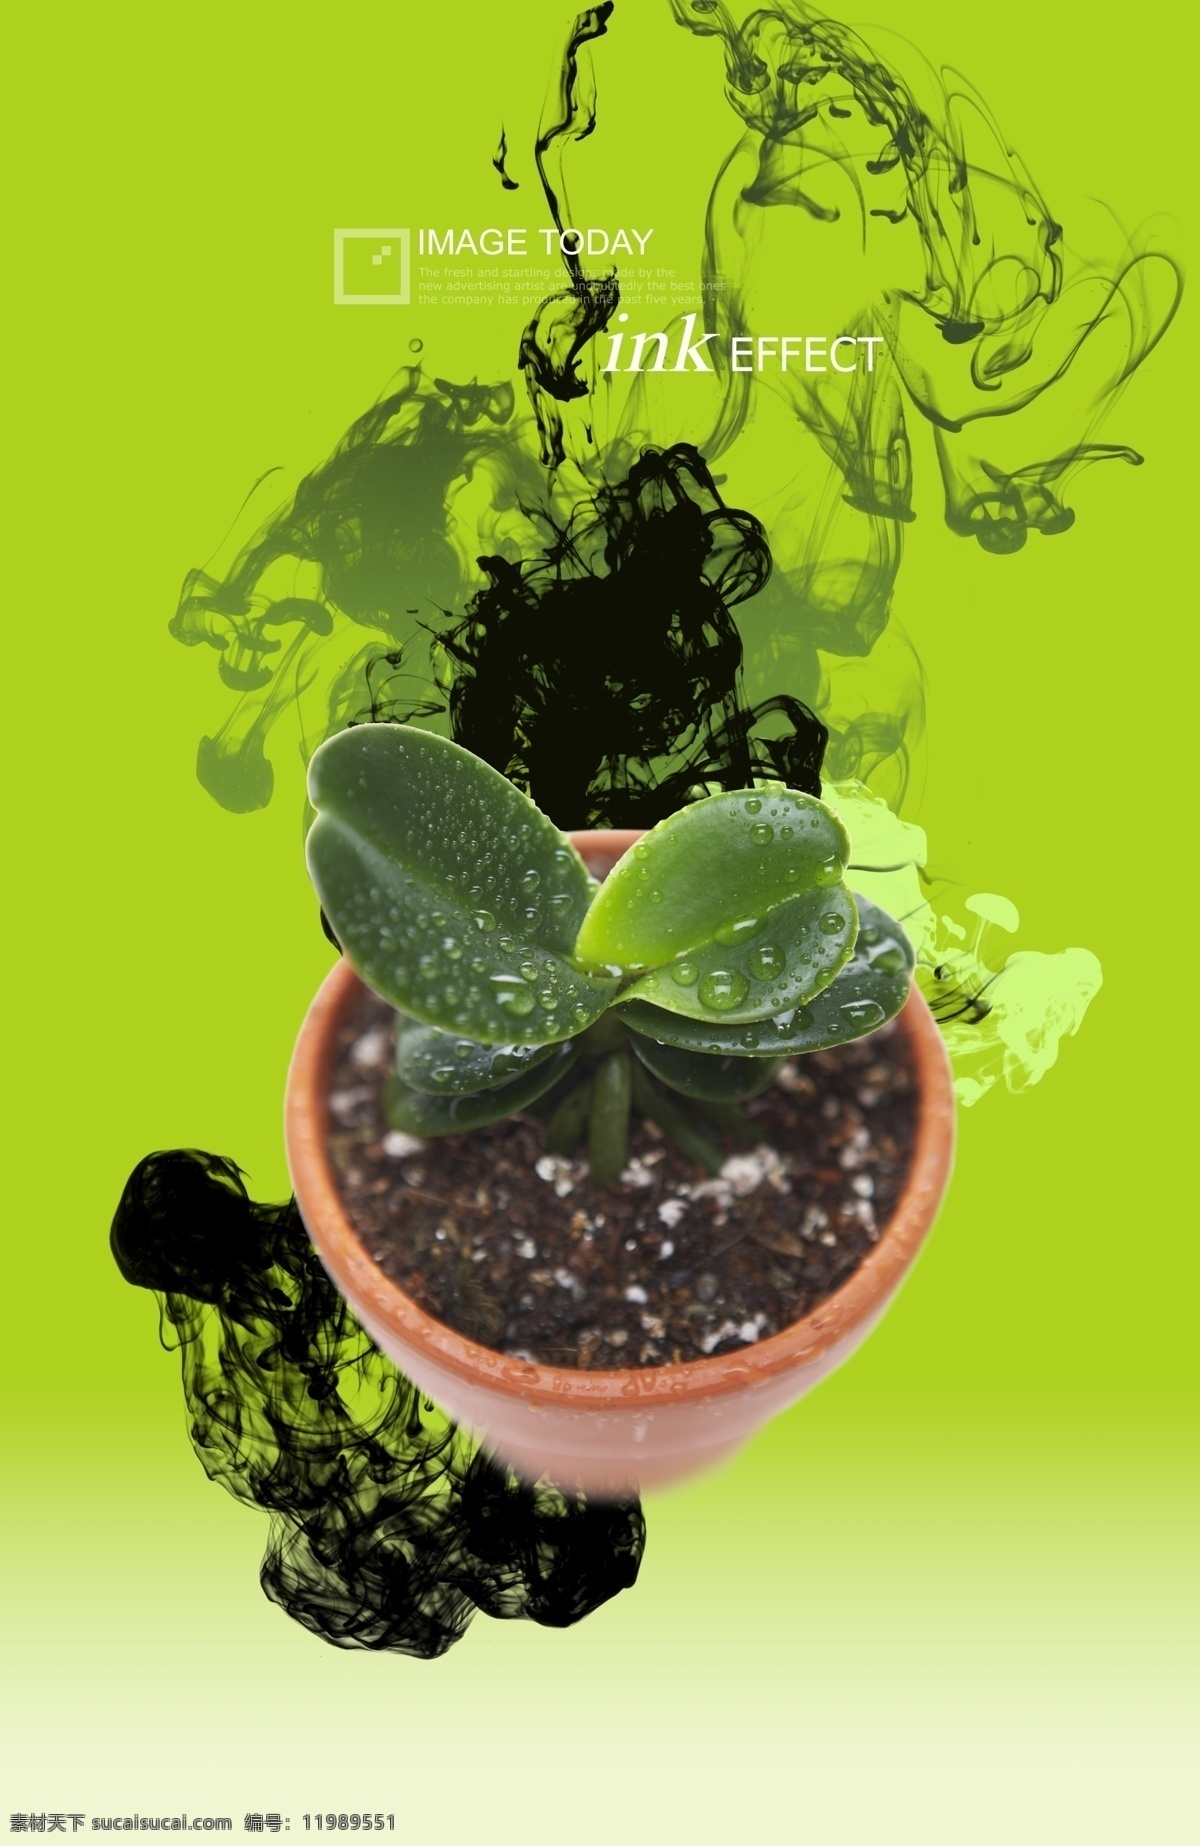 植物盆景 时尚 时尚元素 烟雾 梦幻 炫彩 植物 盆景 绿色植物 广告设计模板 psd素材